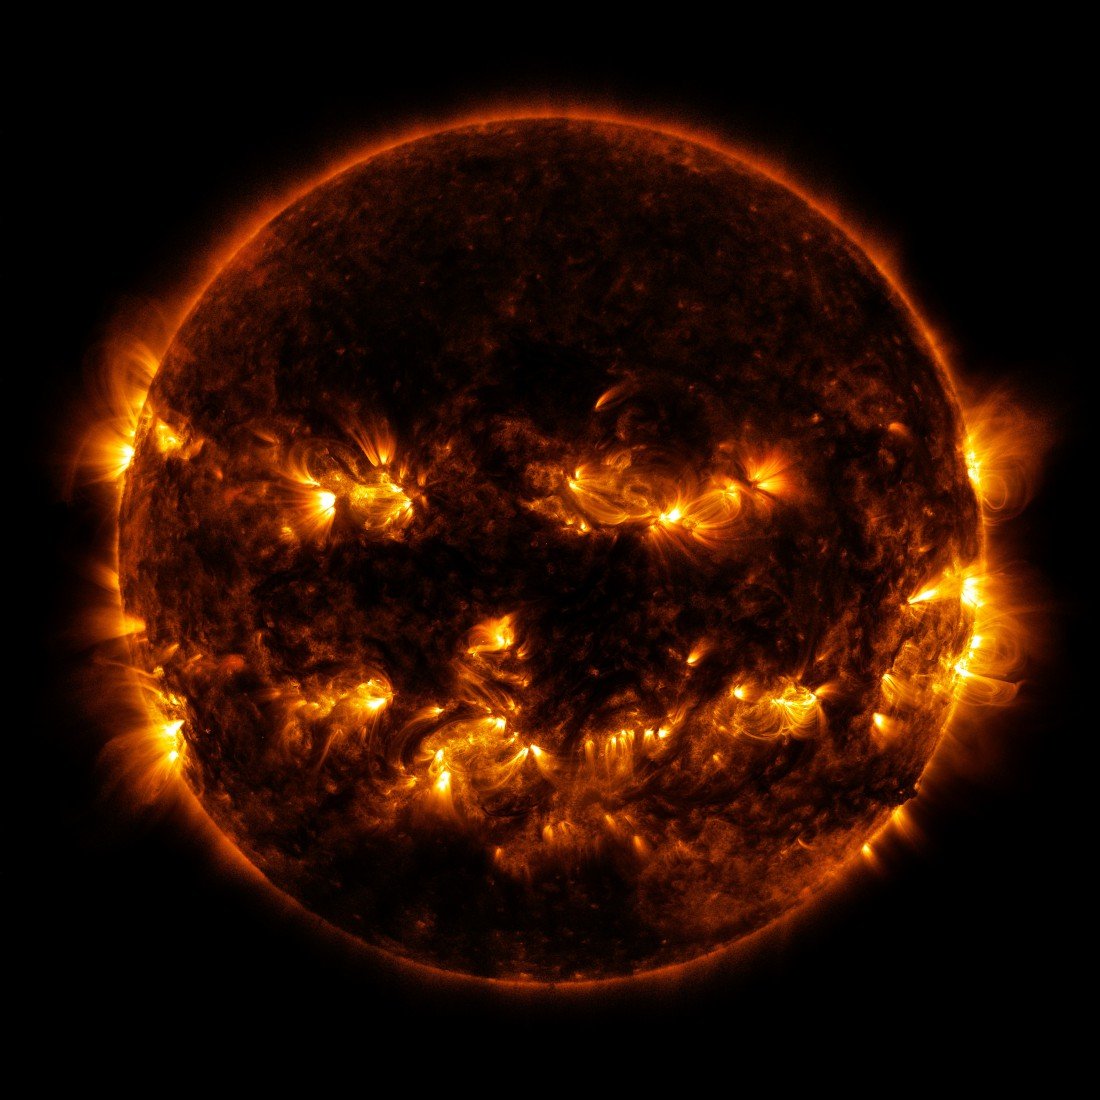 Cette image du soleil par l'observatoire de la dynamique solaire (SDO) est aussi parfaite pour Halloween